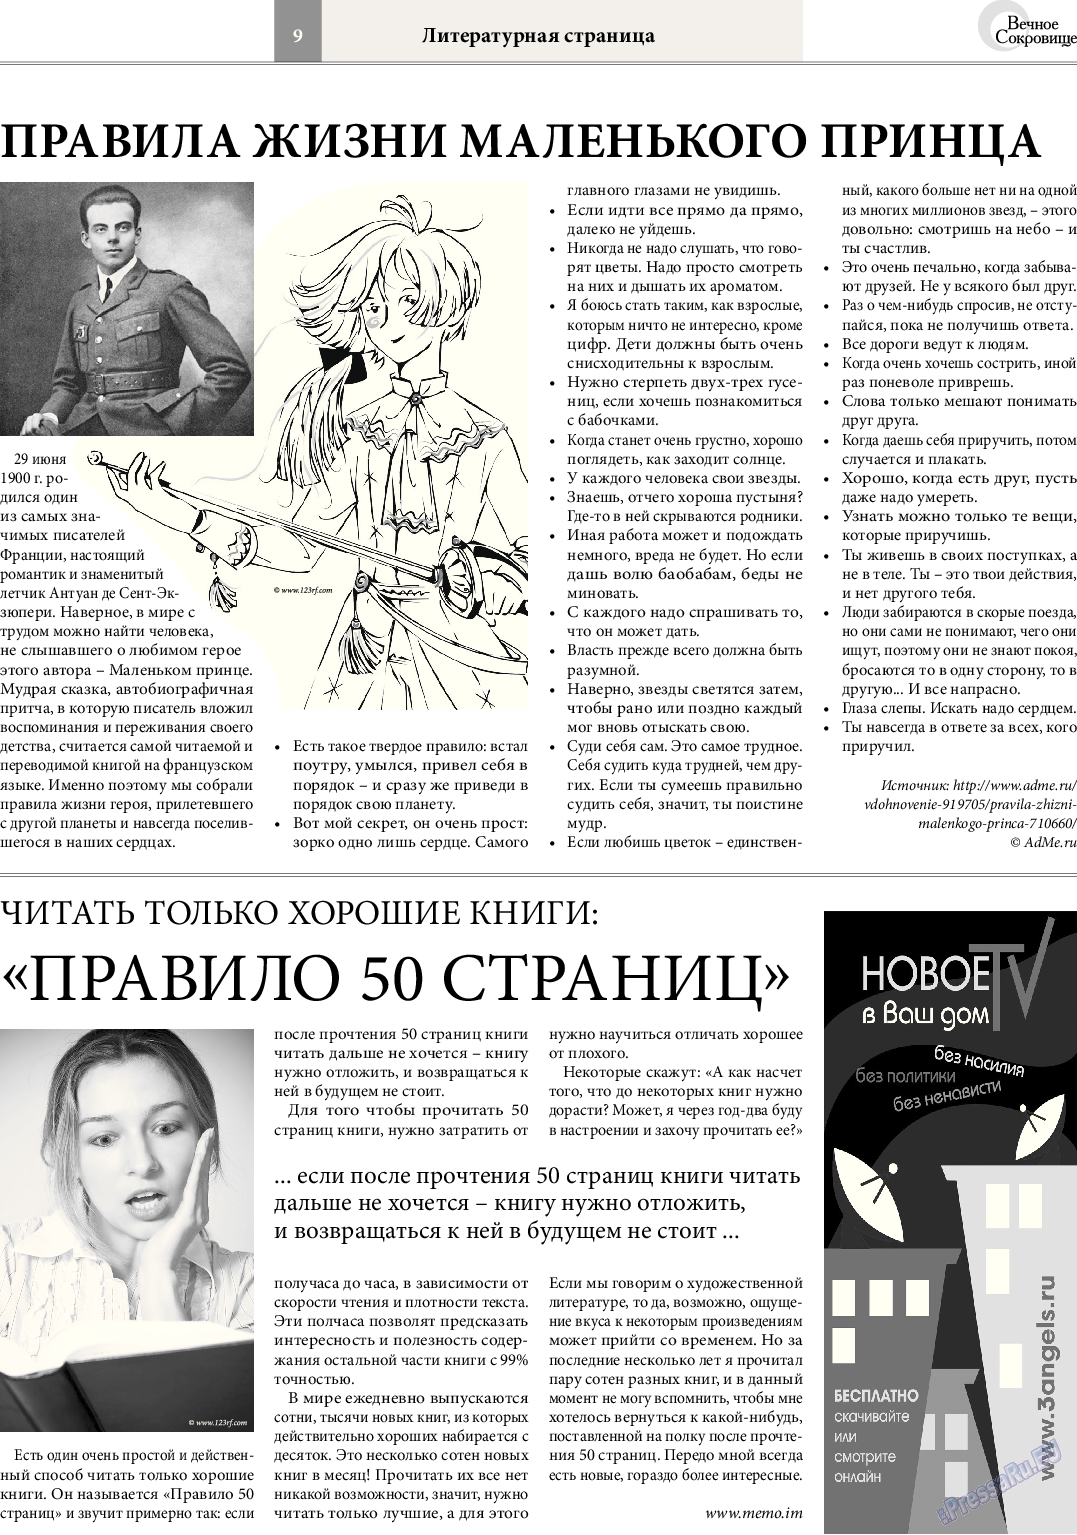 Вечное сокровище (газета). 2014 год, номер 4, стр. 9